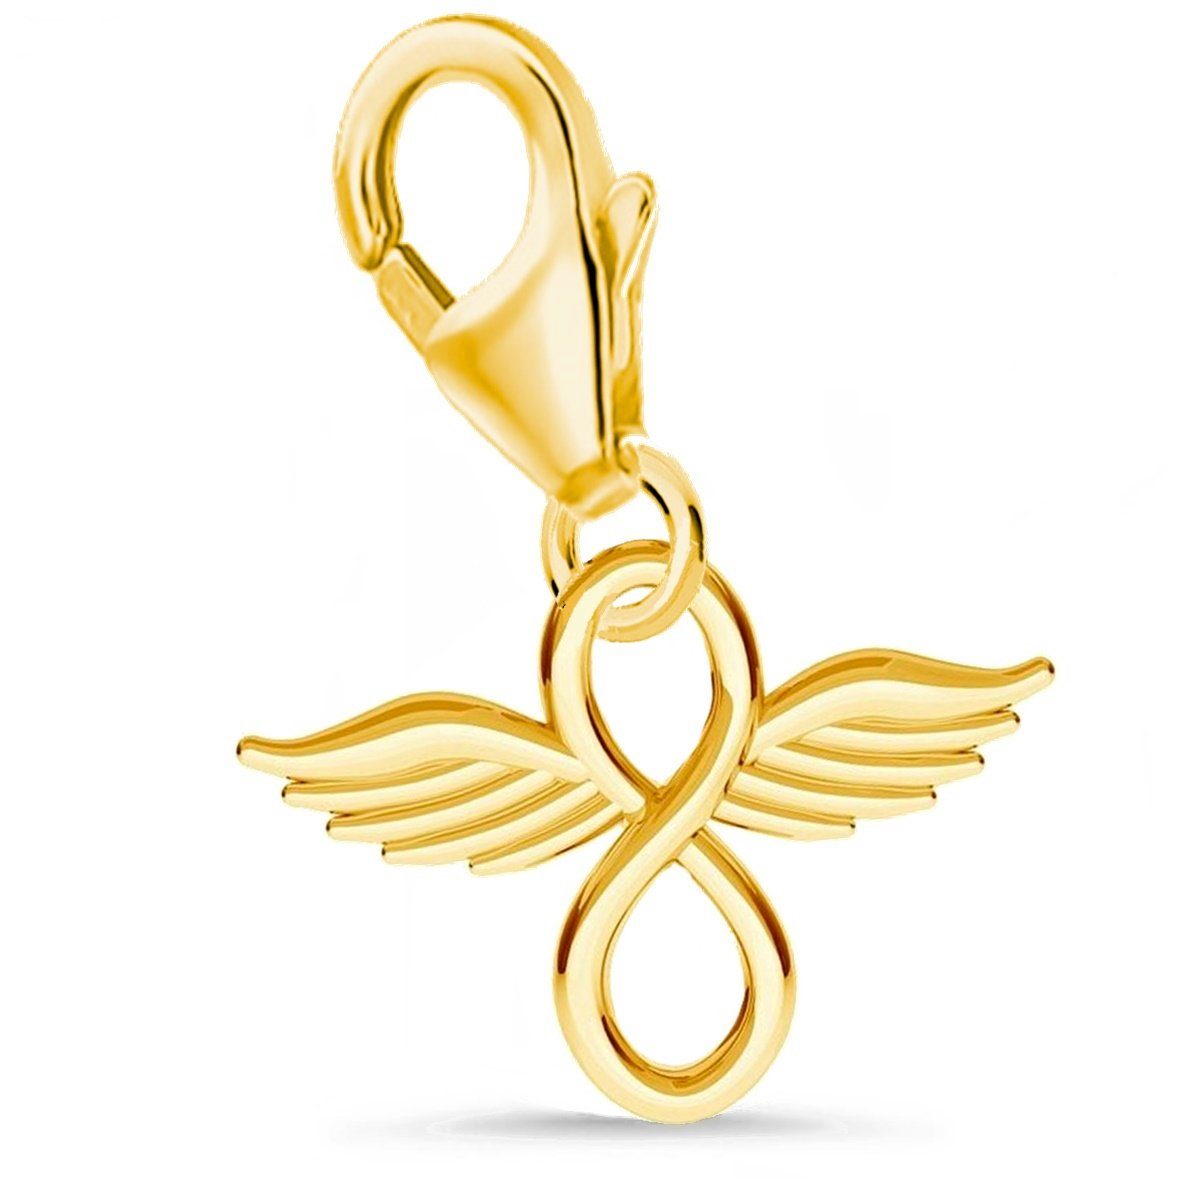 Goldene Hufeisen Charm Flügel 925 Anhänger Silber Flügel Unendlichkeit Karabiner mit Charm